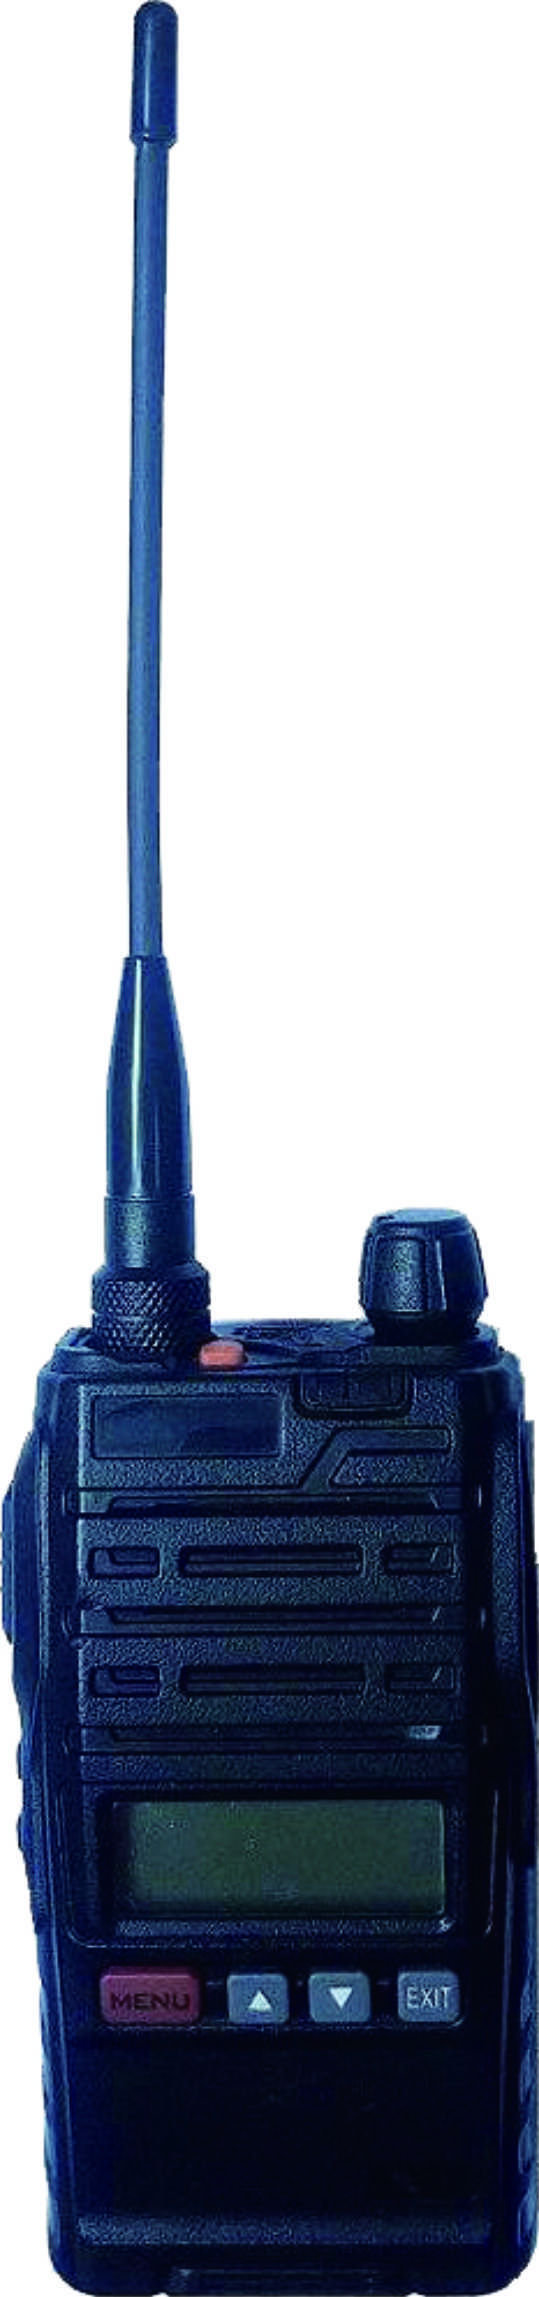 KTL136-S（A）礦用本安型手持機